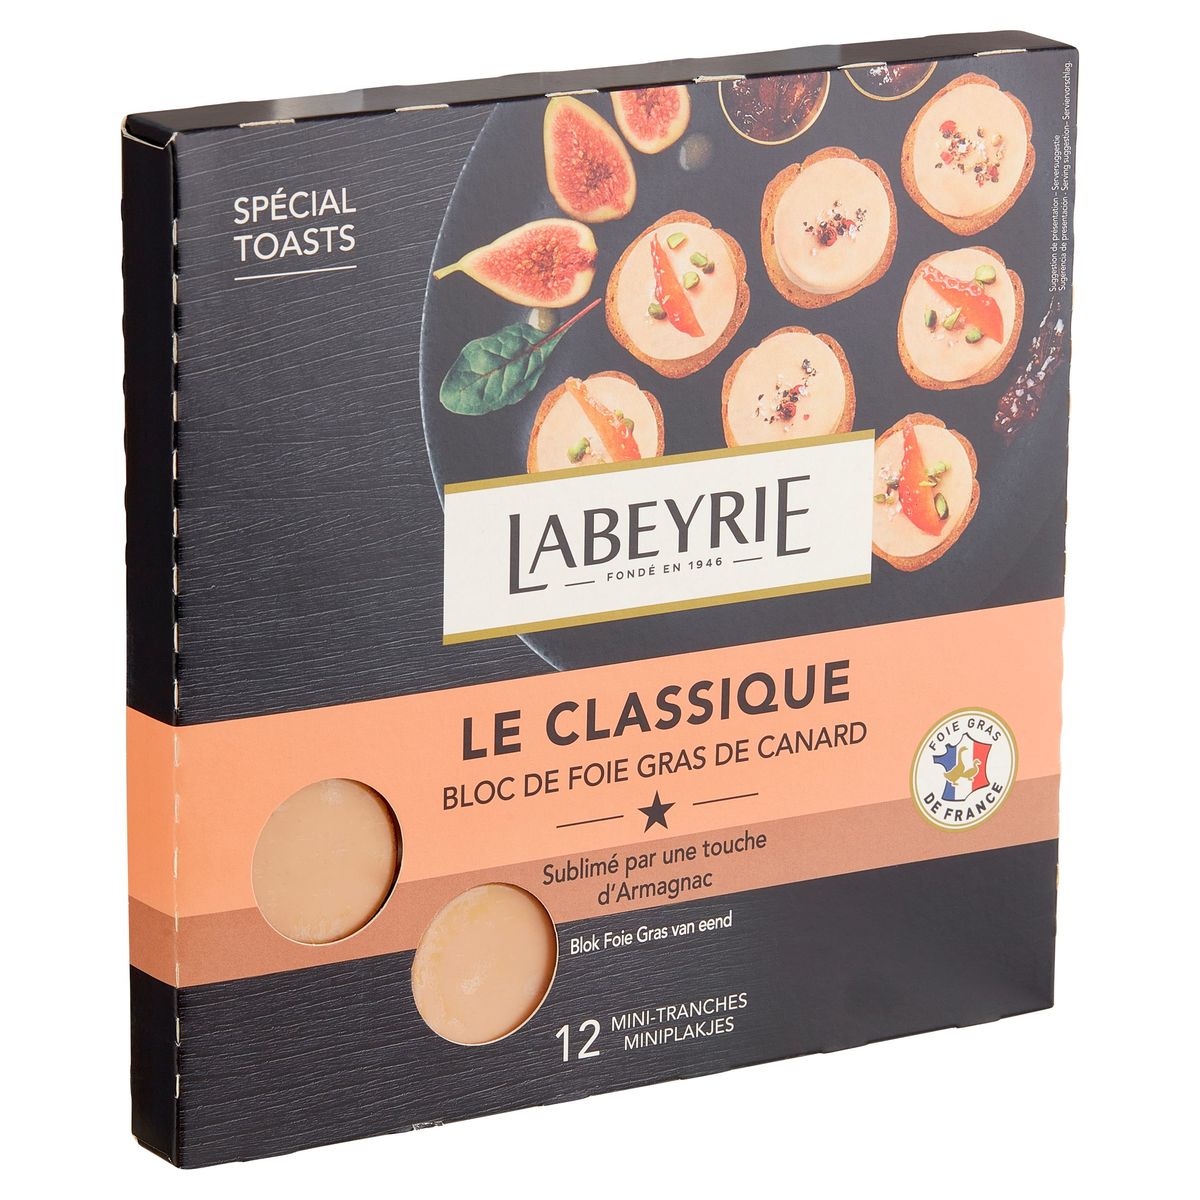 Labeyrie Le Classique Bloc de Foie Gras de Canard 90 g